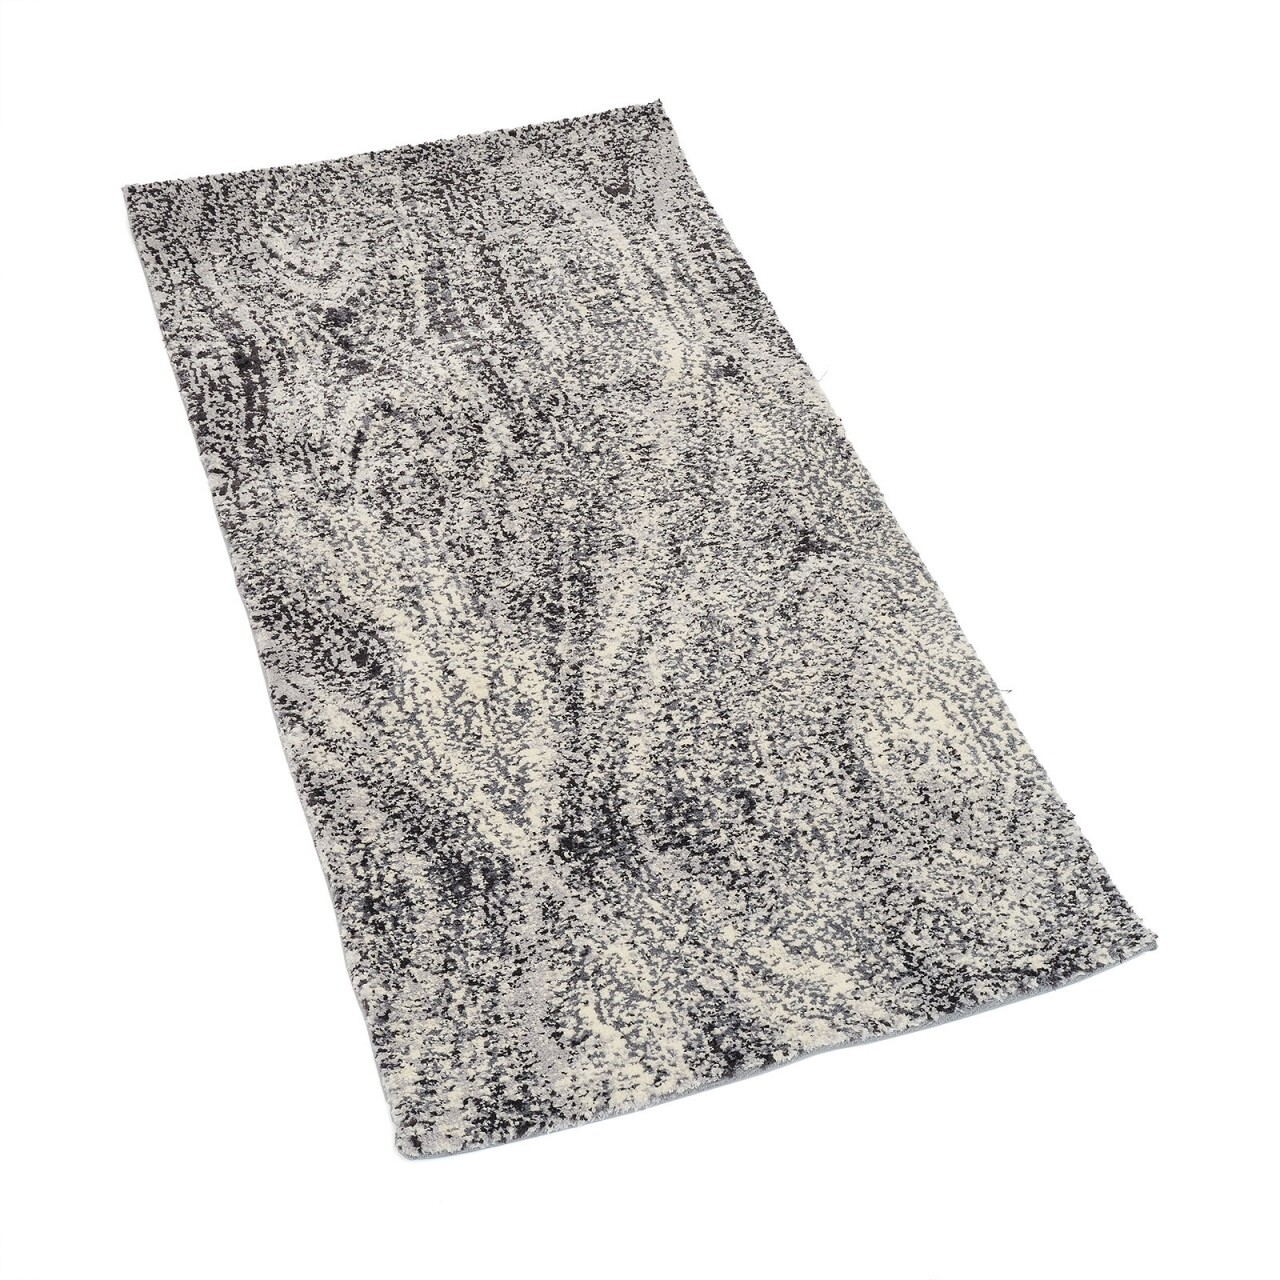 Dűne szőnyeg, Heinner, 160 x 230 cm, 100% poliészter, szürke / bézs